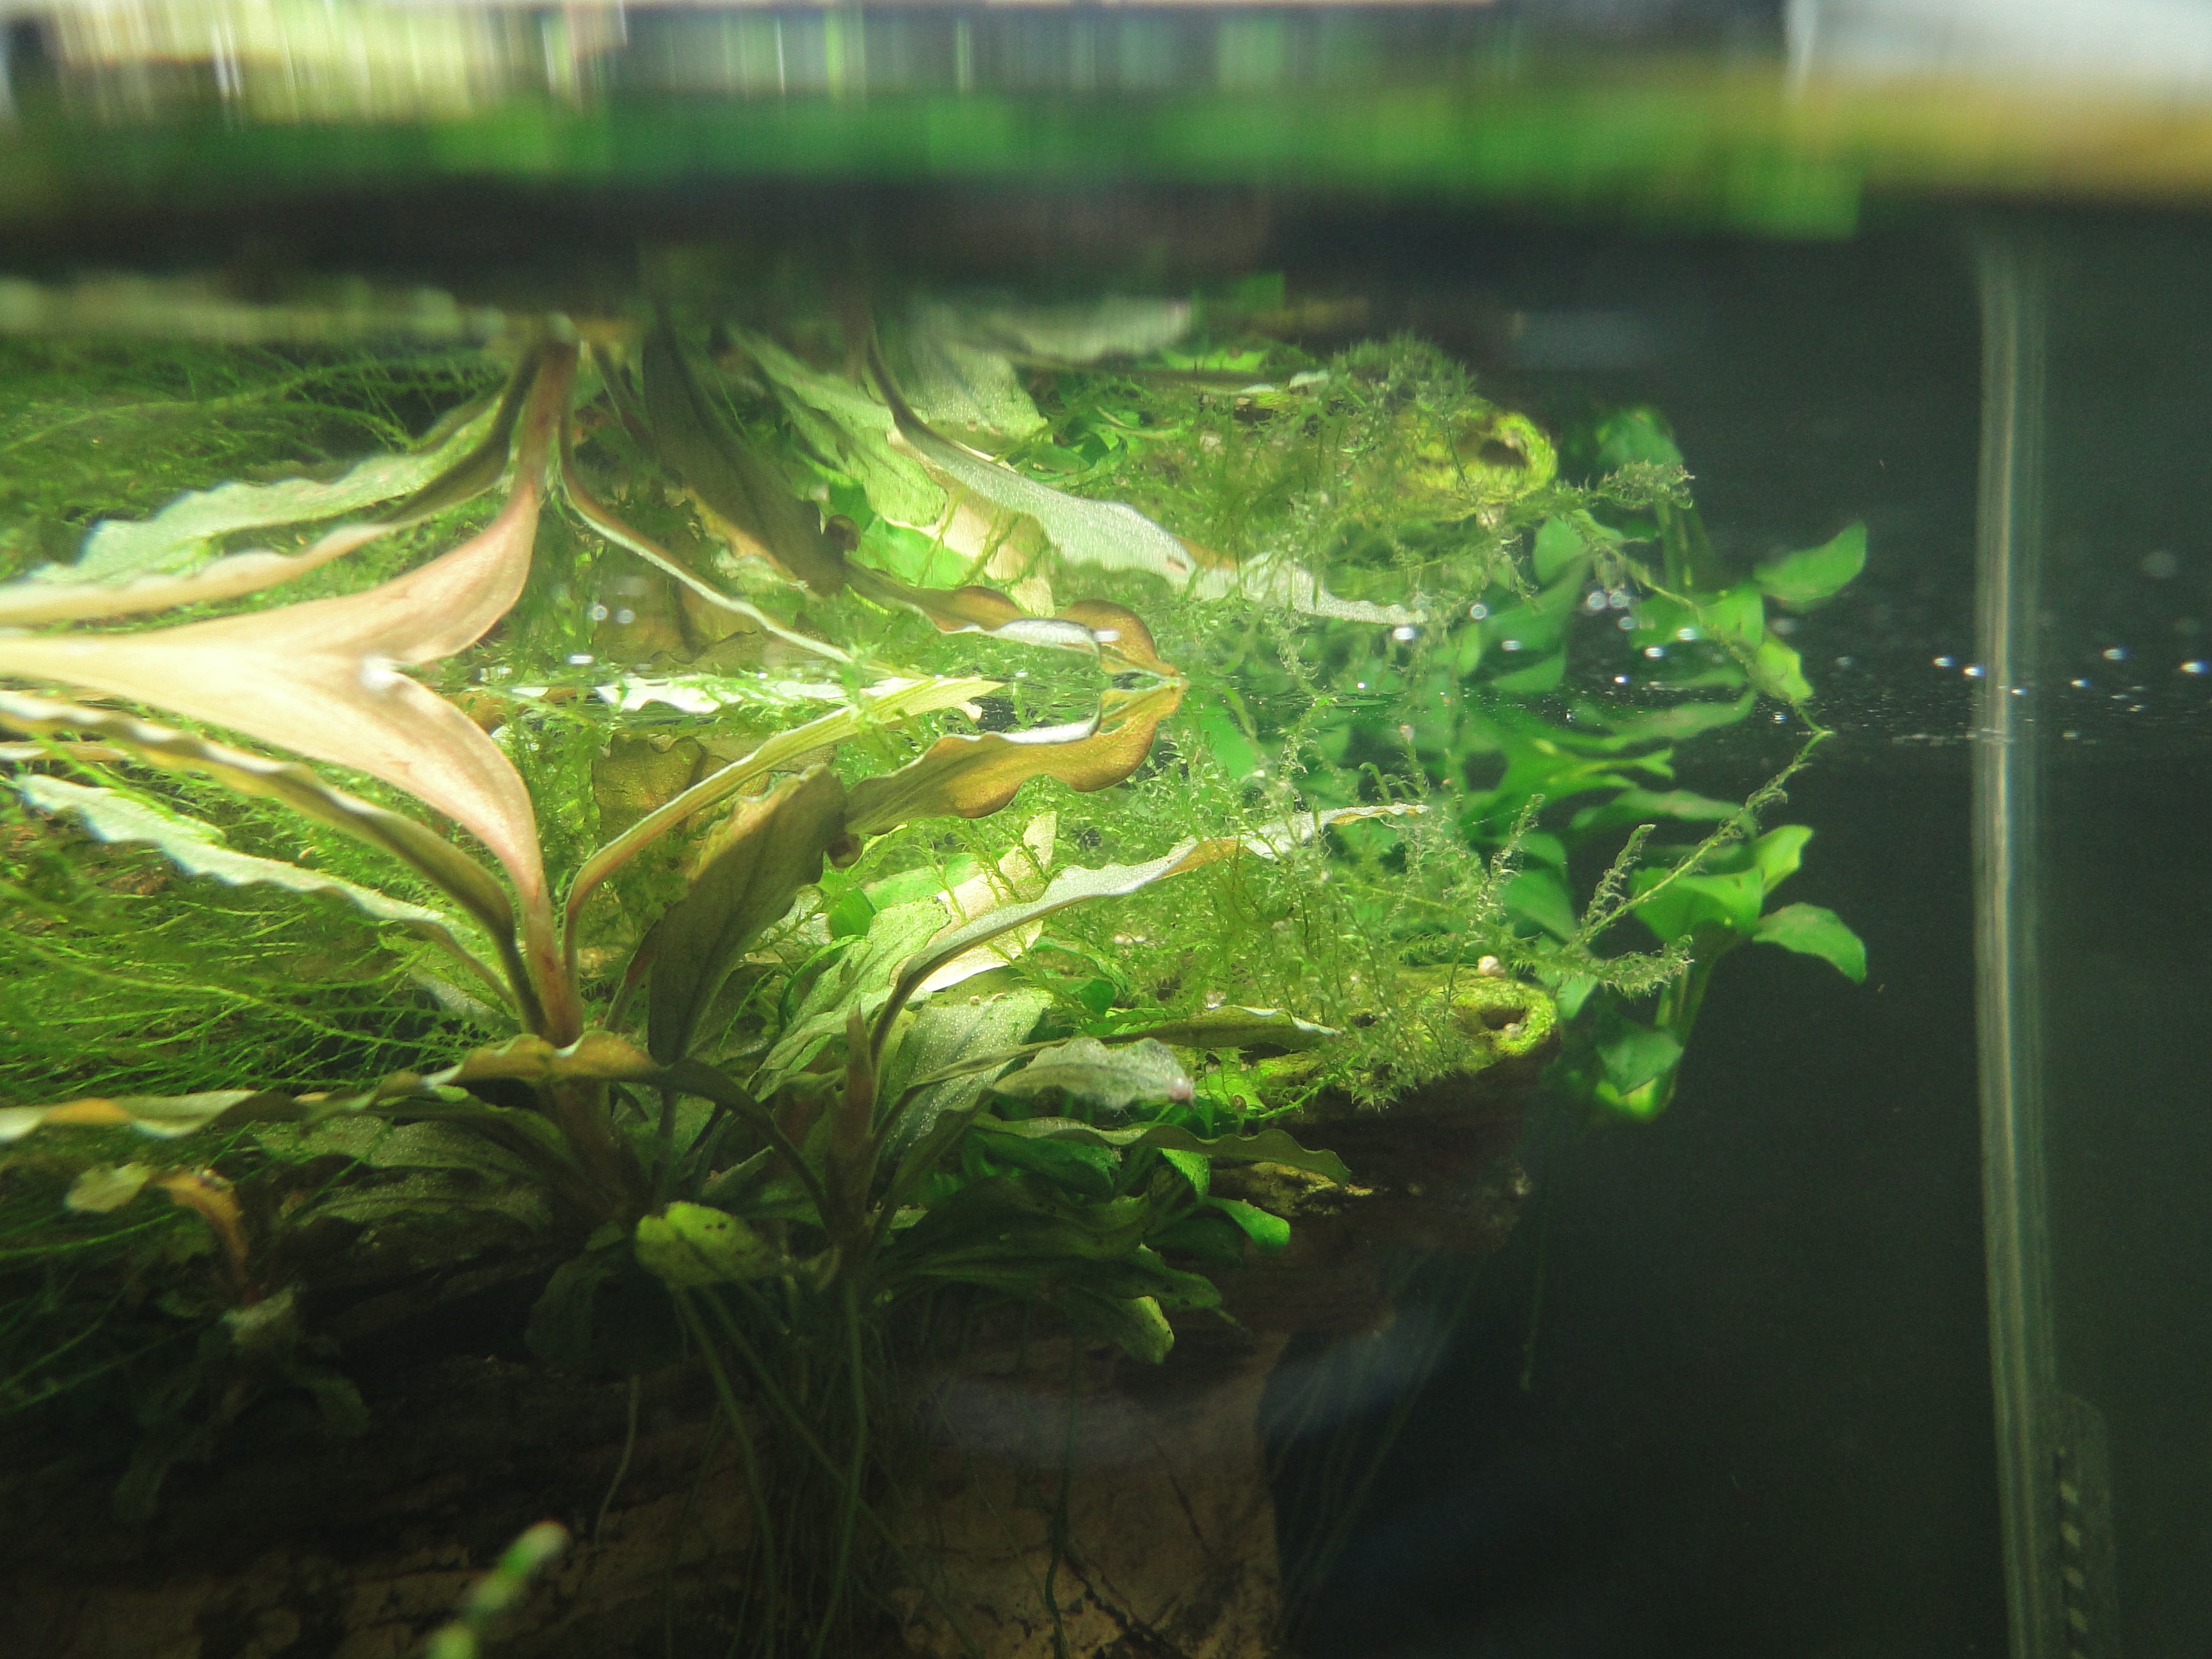 Bucephalandra und Moos unter der Wasseroberfläche direkt unter dem Licht